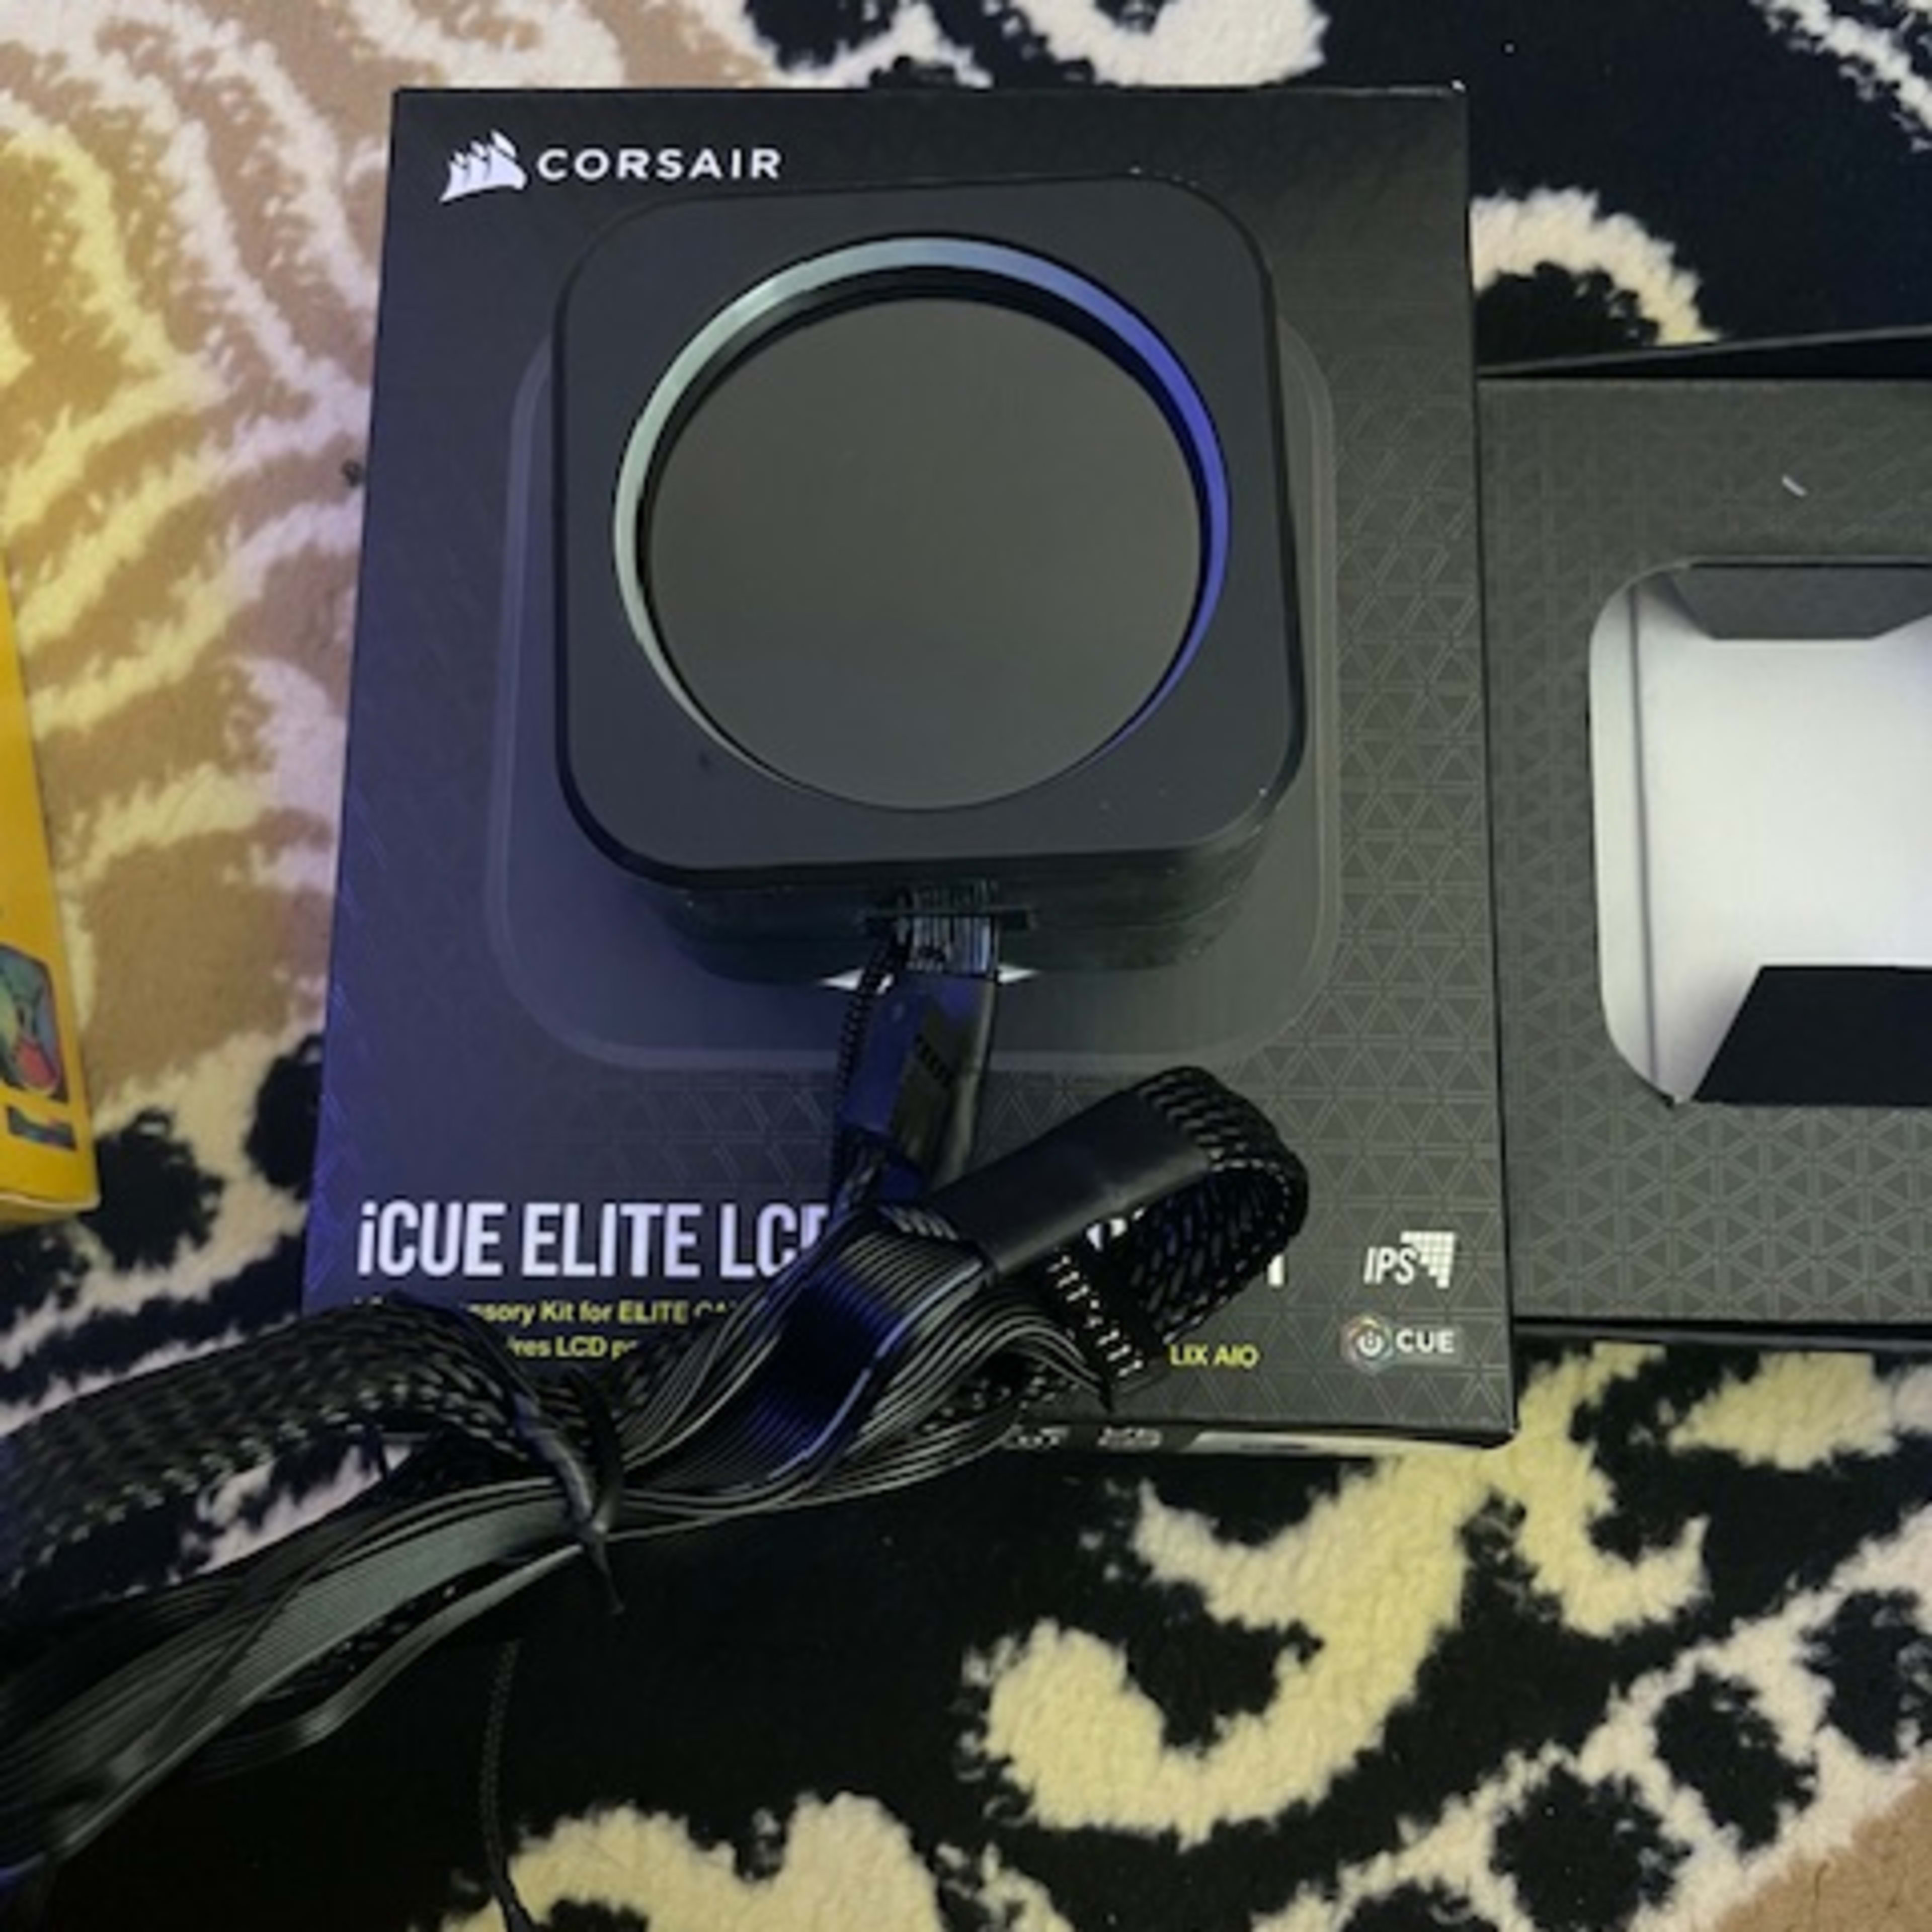 Corsair LCD Elite upgrade kit